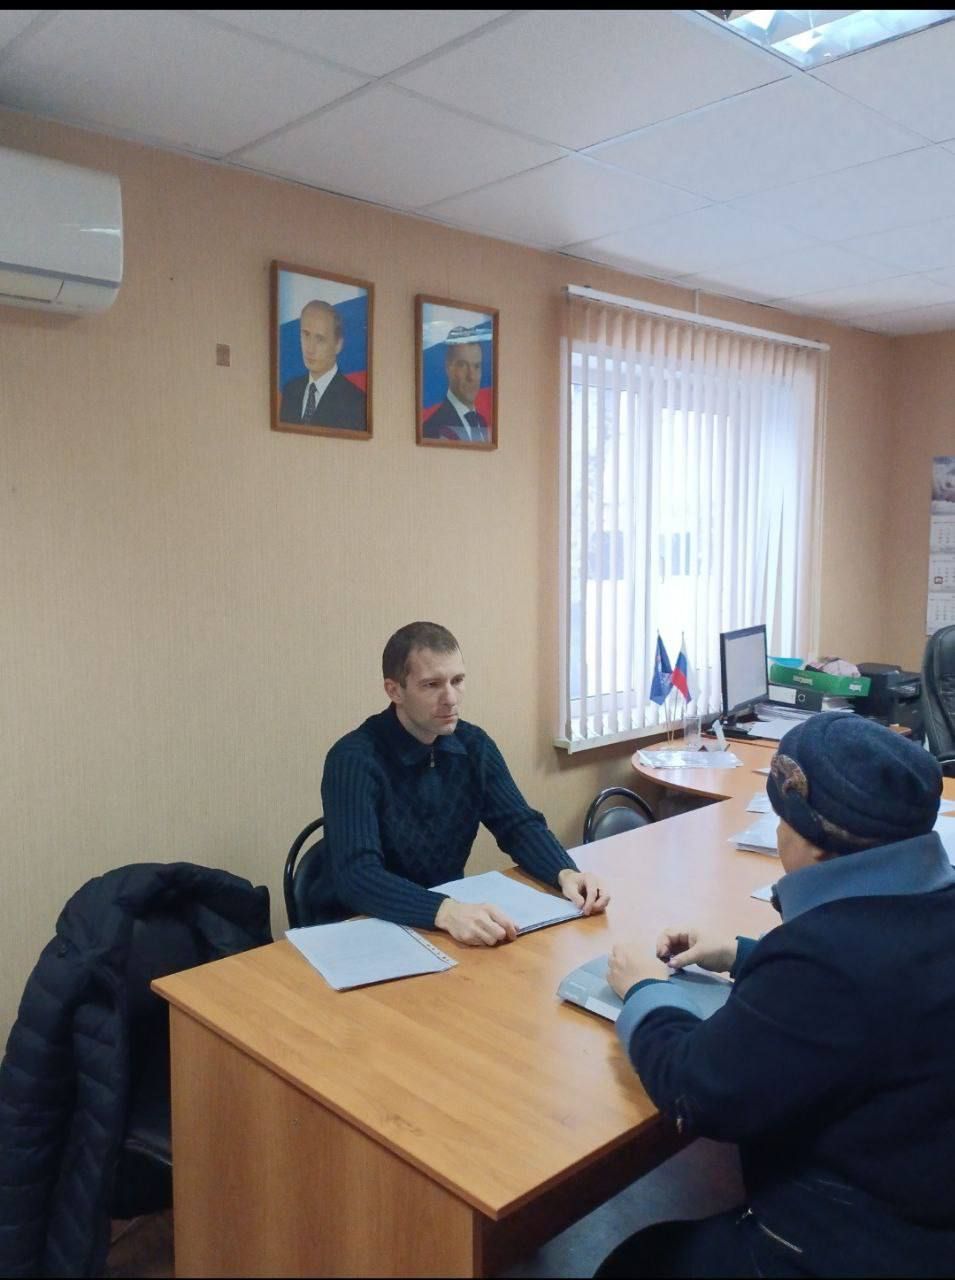 Ульяновские юристы оказали бесплатную юрпомощь гражданам на площадках общественной приёмной партии “Единая Россия”